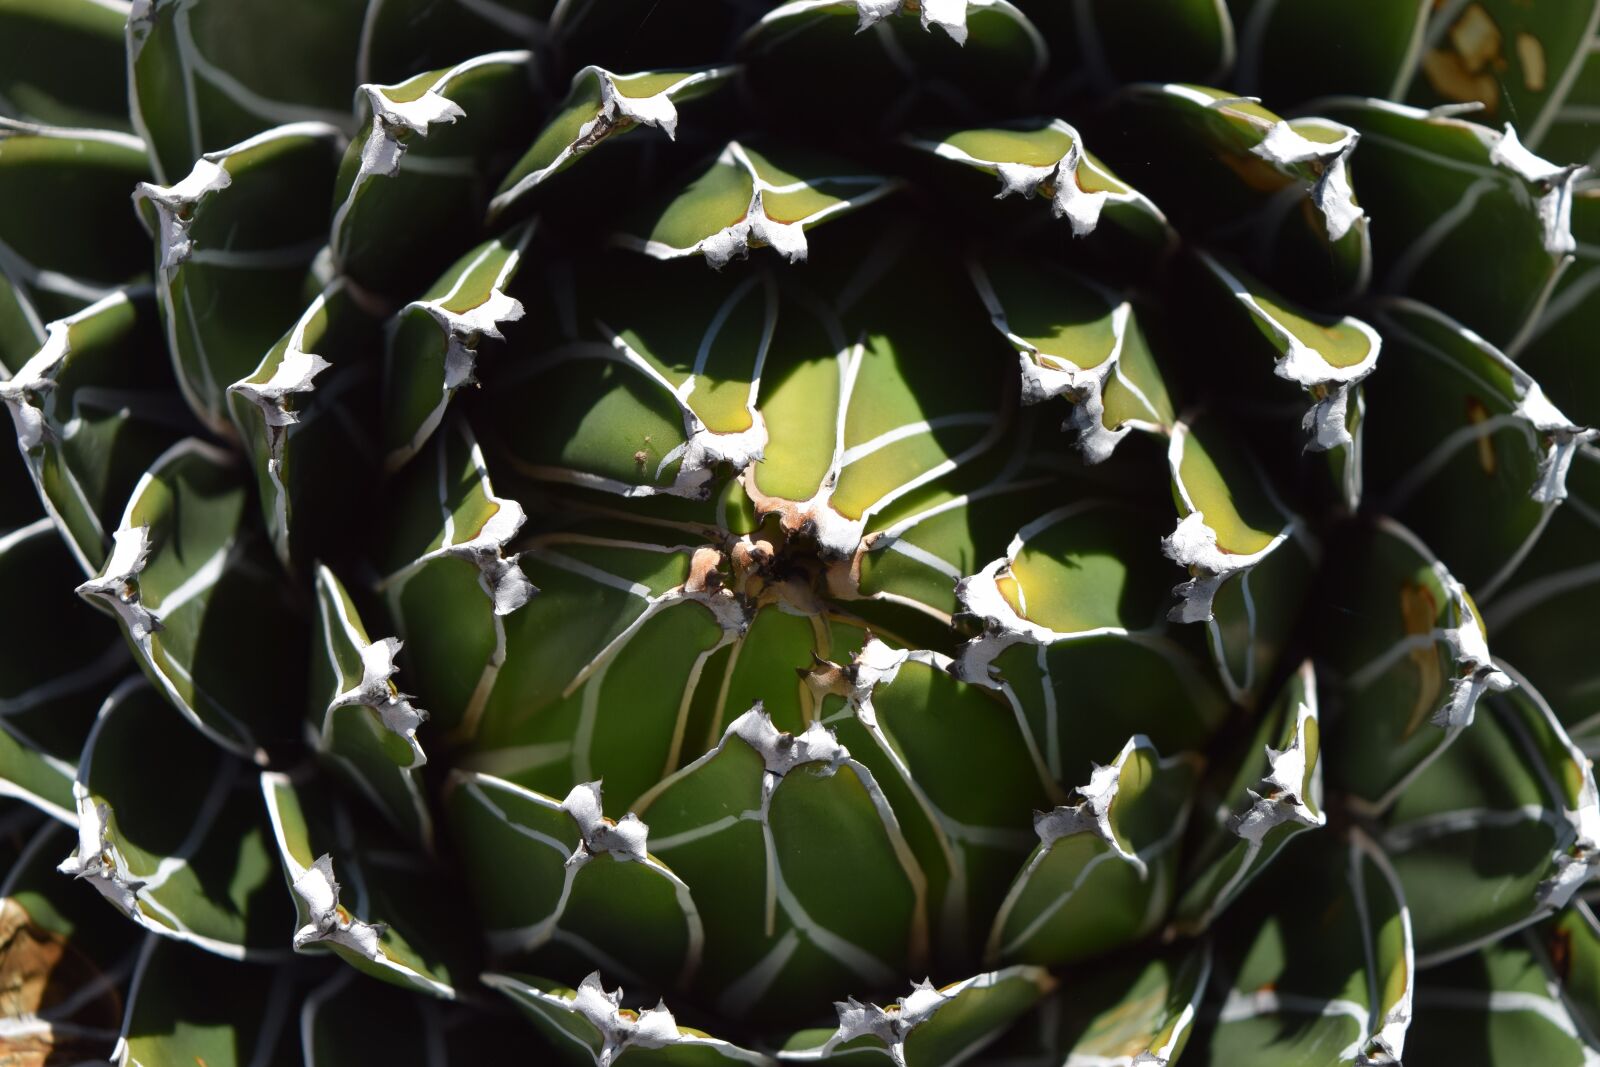 Nikon D3300 sample photo. Cactus, succulent, green photography